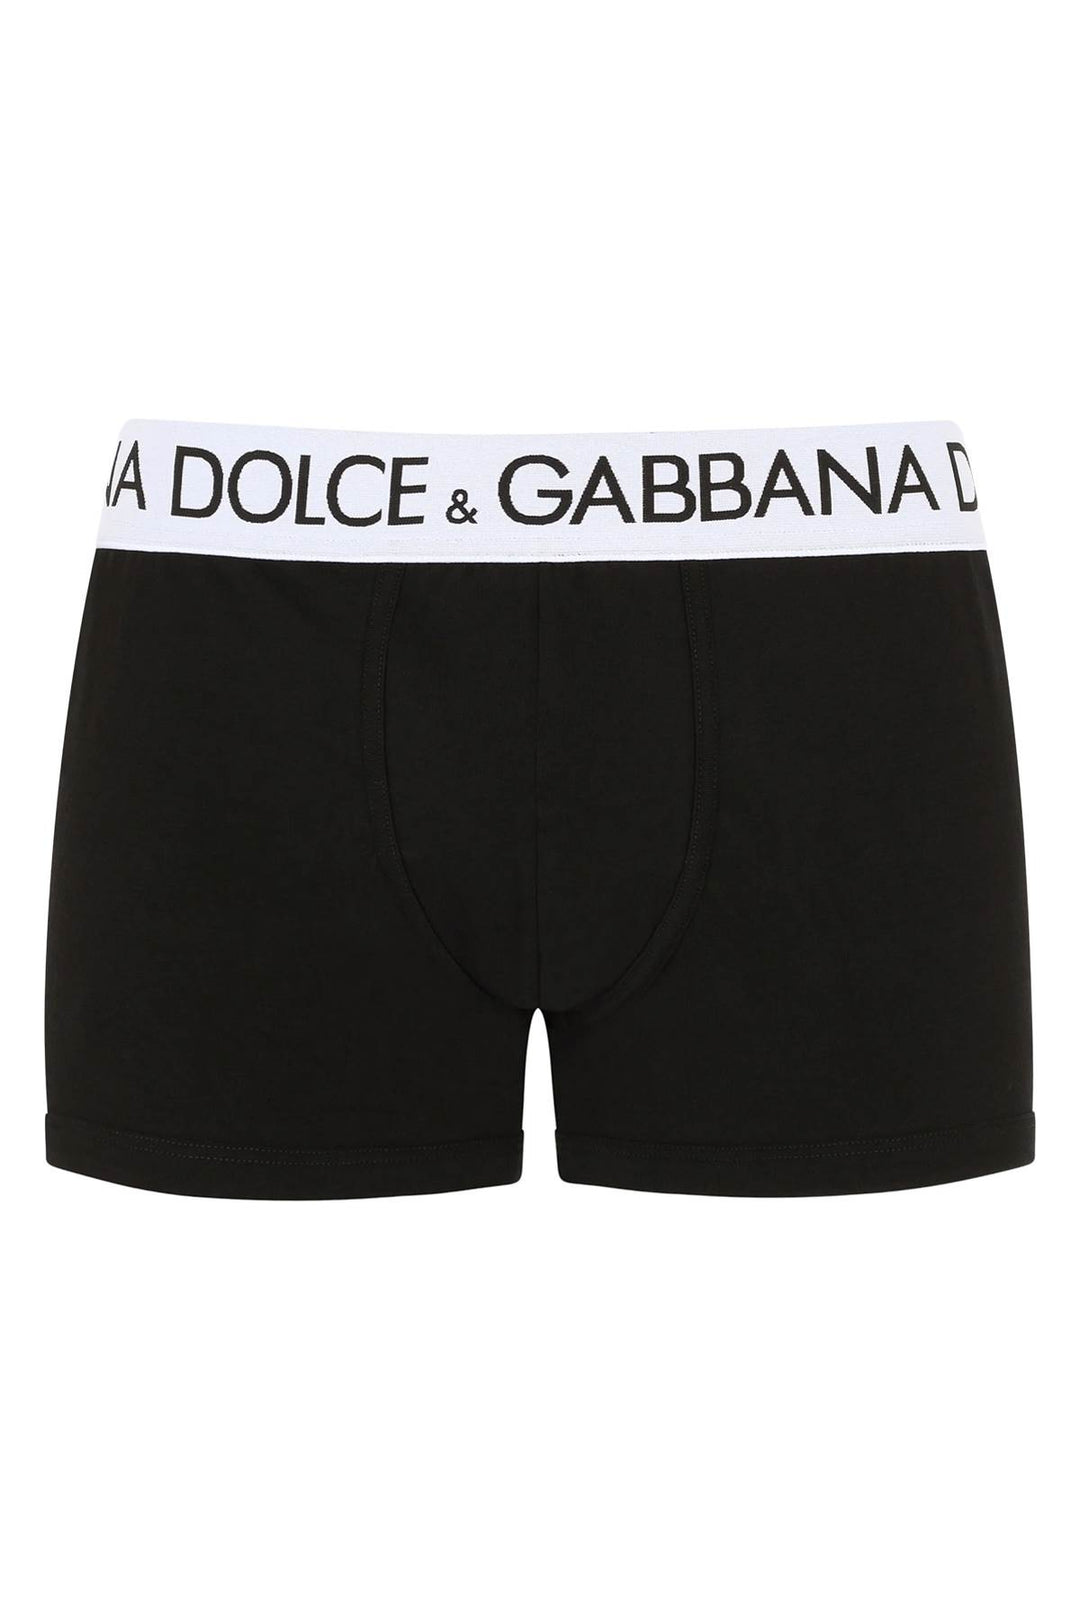 Boxer In Cotone Con Fascia Logata - Dolce & Gabbana - Uomo